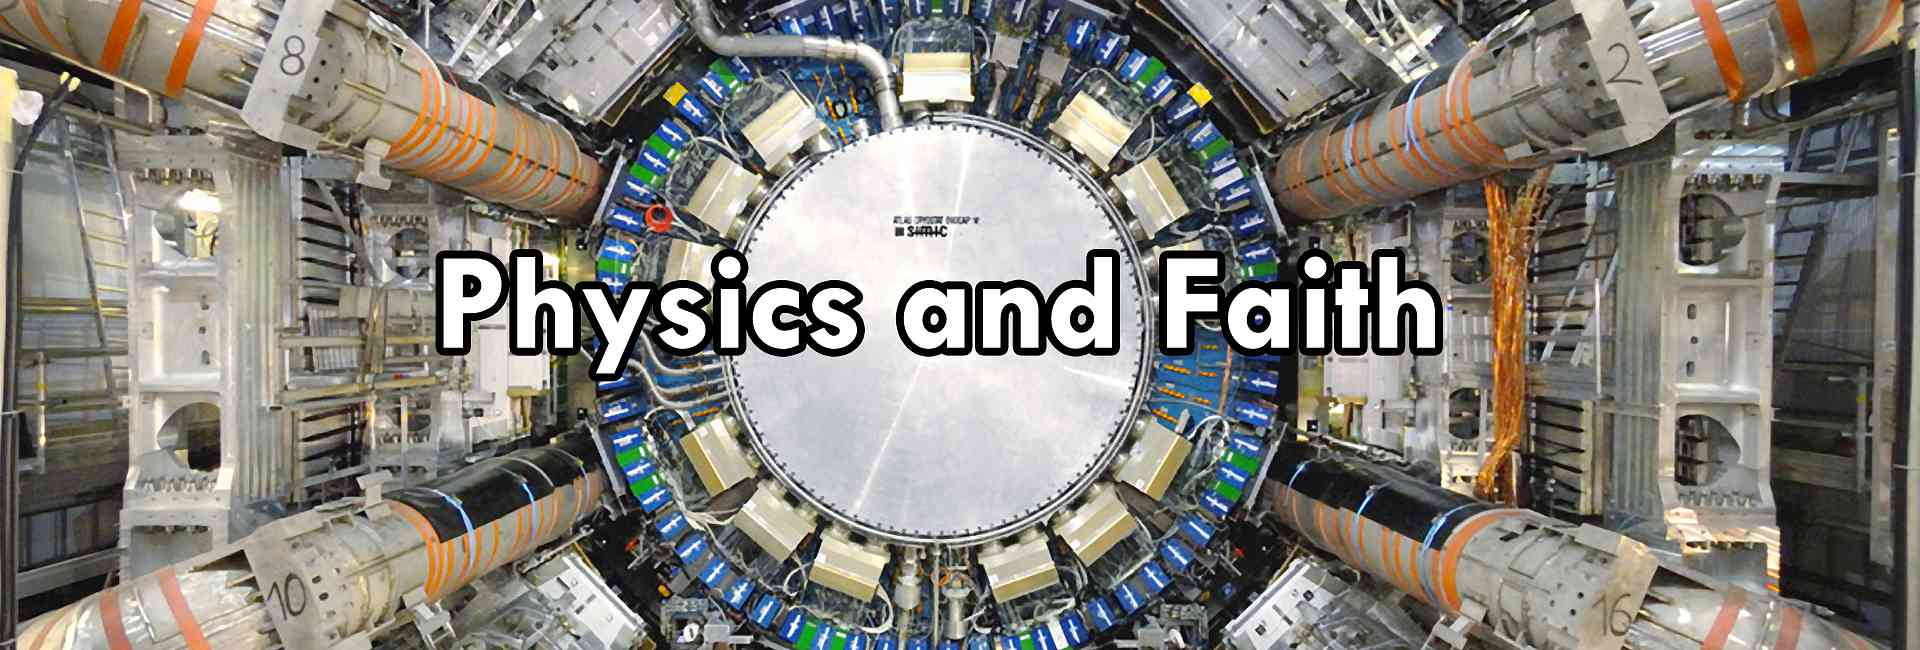 Physics and Faith